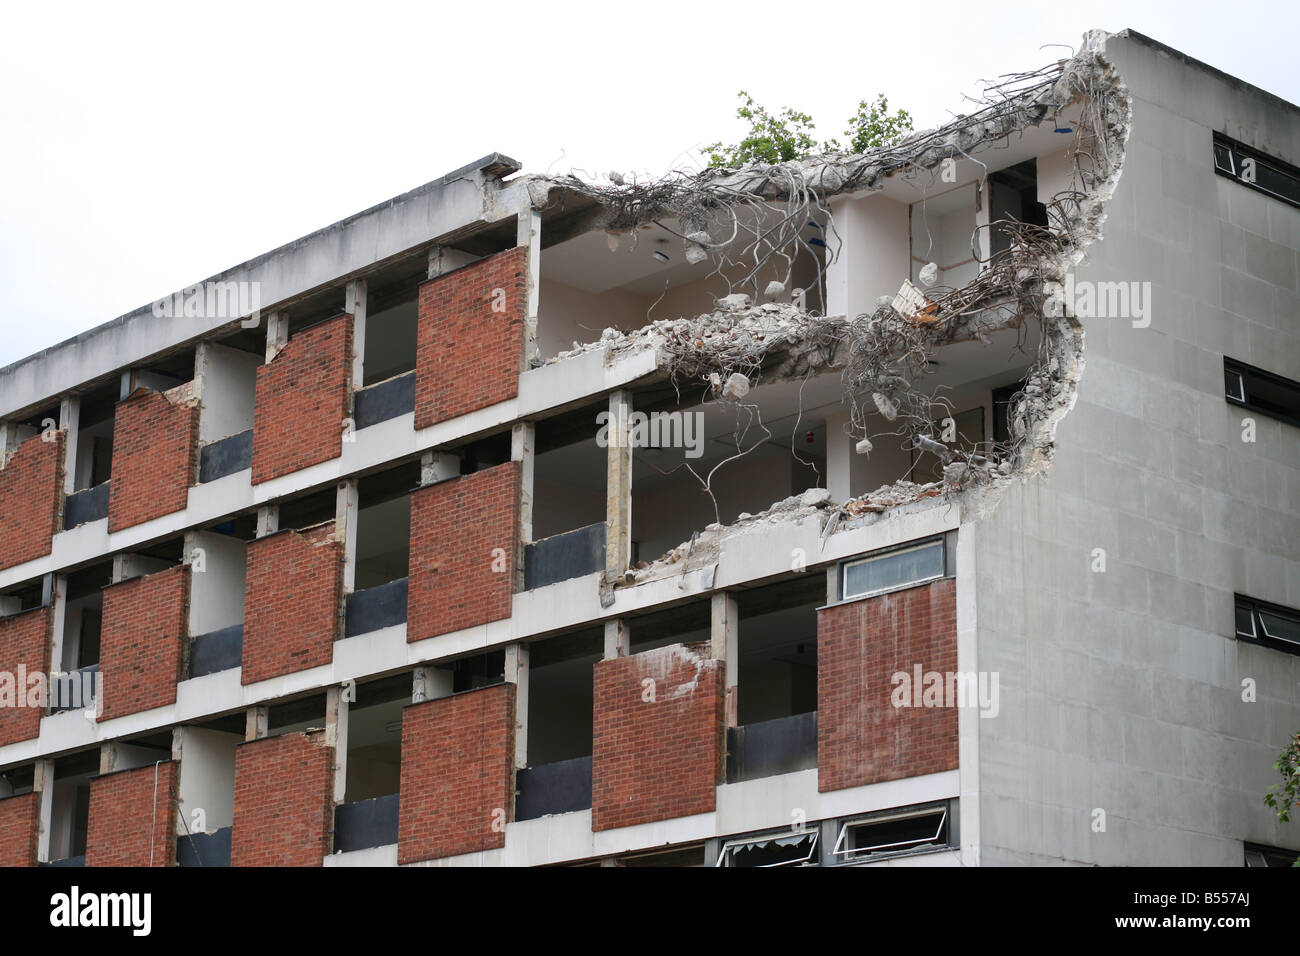 A derelict London building for destruction. Stock Photo